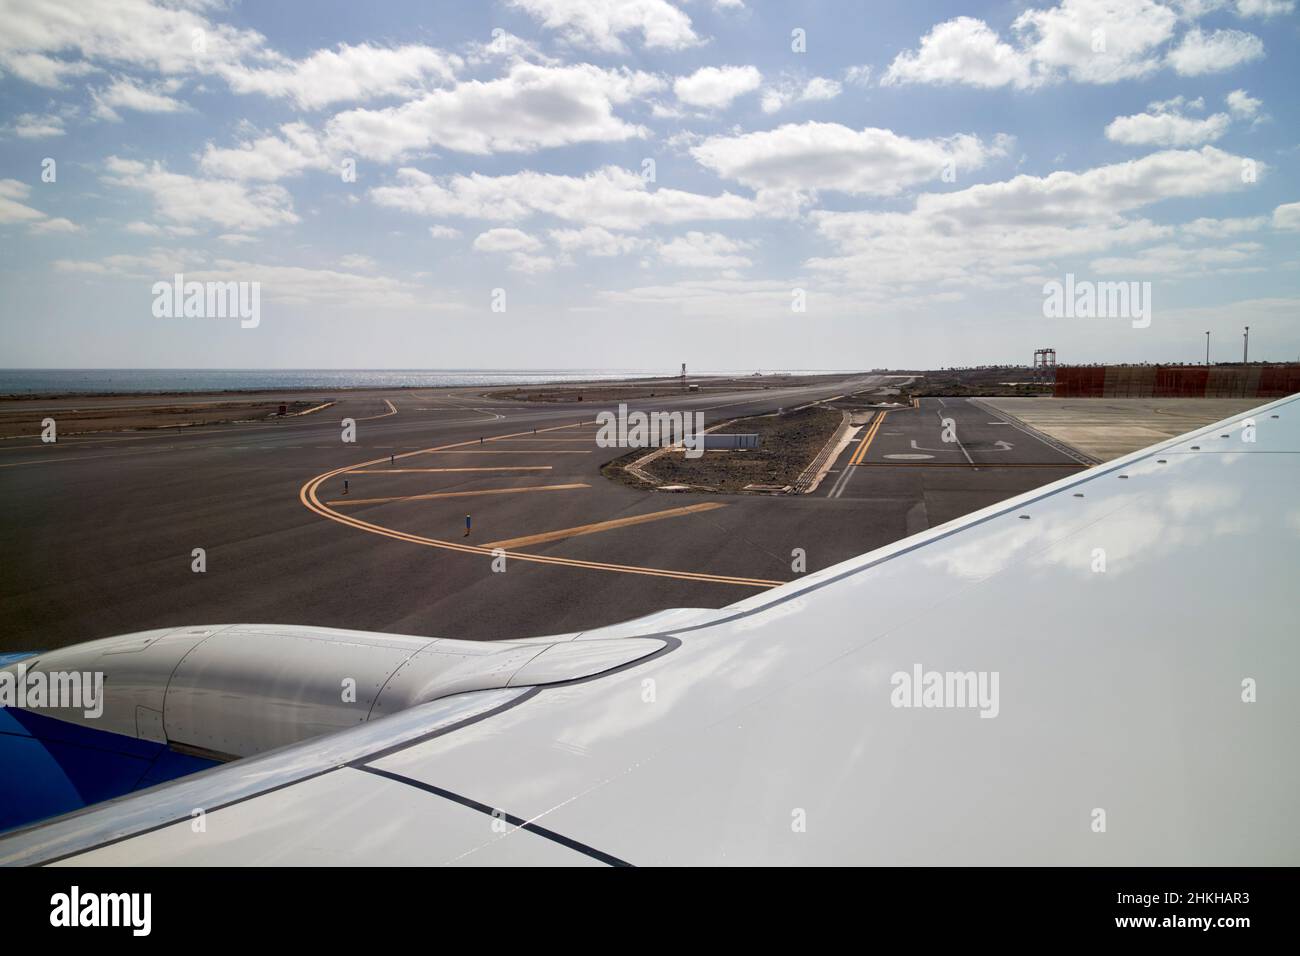 An Bord eines Flugzeugs mit Blick aus dem Fenster am Flughafen arrecife Lanzarote Kanarische Inseln Spanien Stockfoto